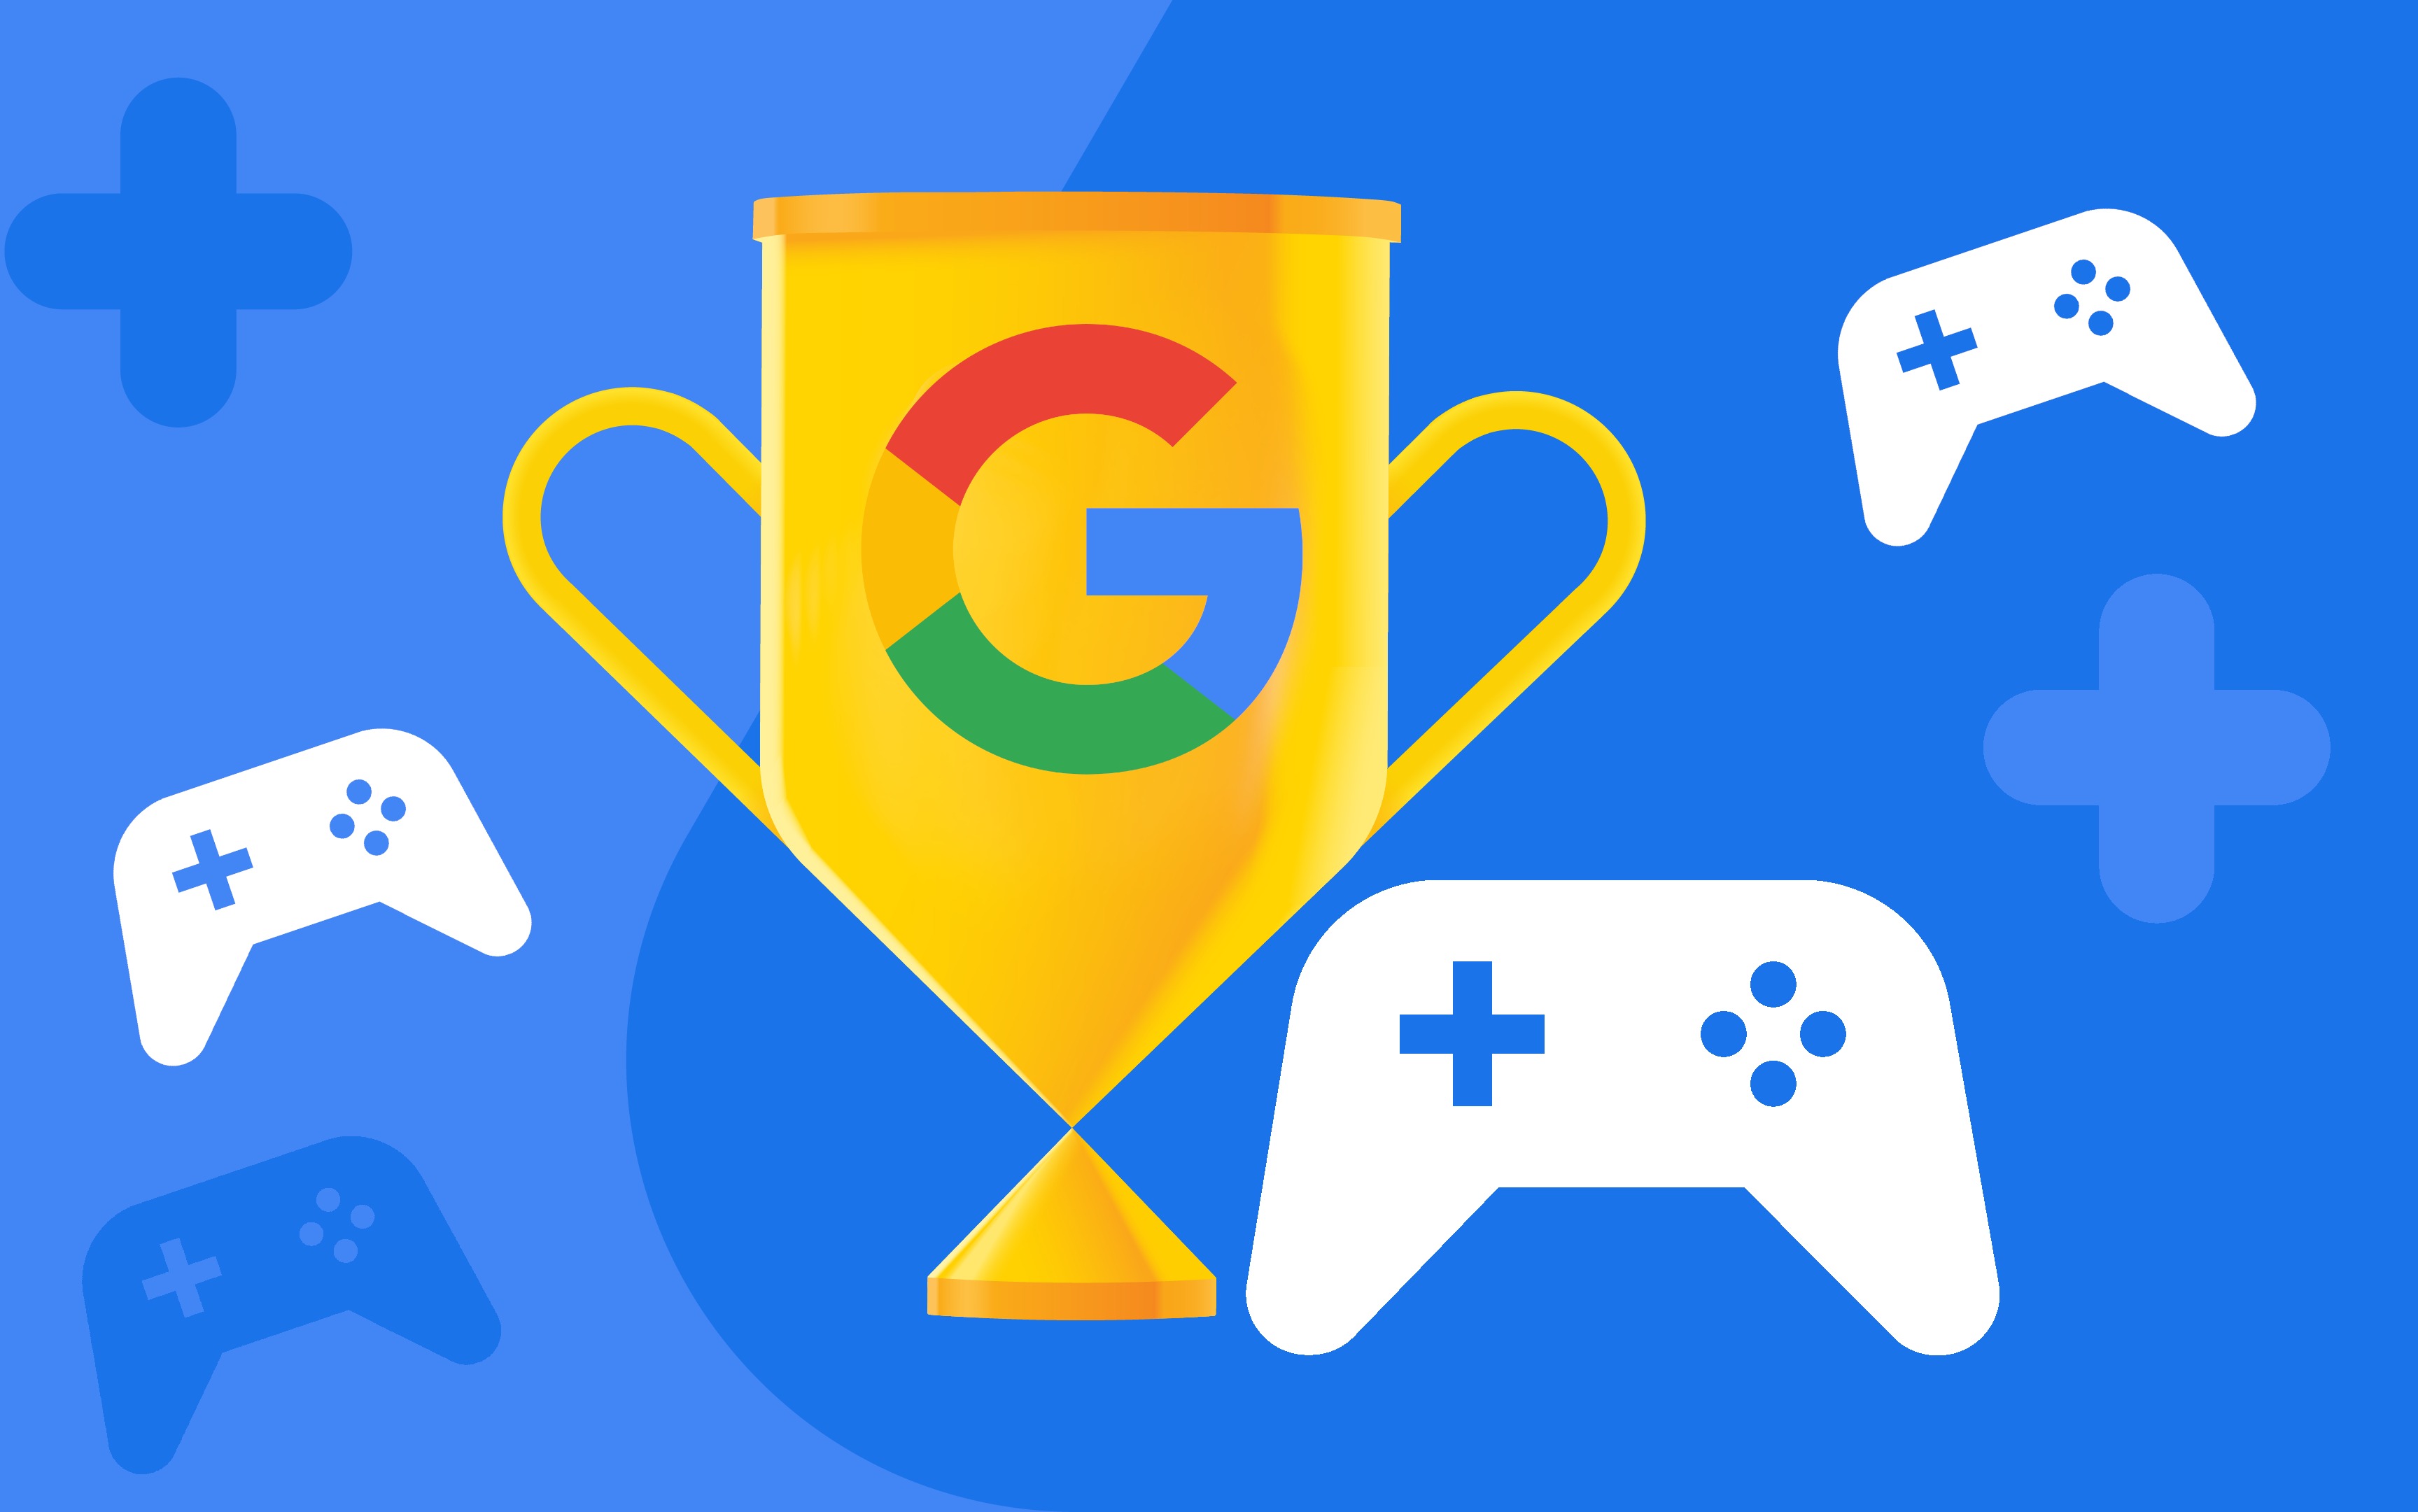 Jogos do Google: Descubra os games escondidos criados pelo Google